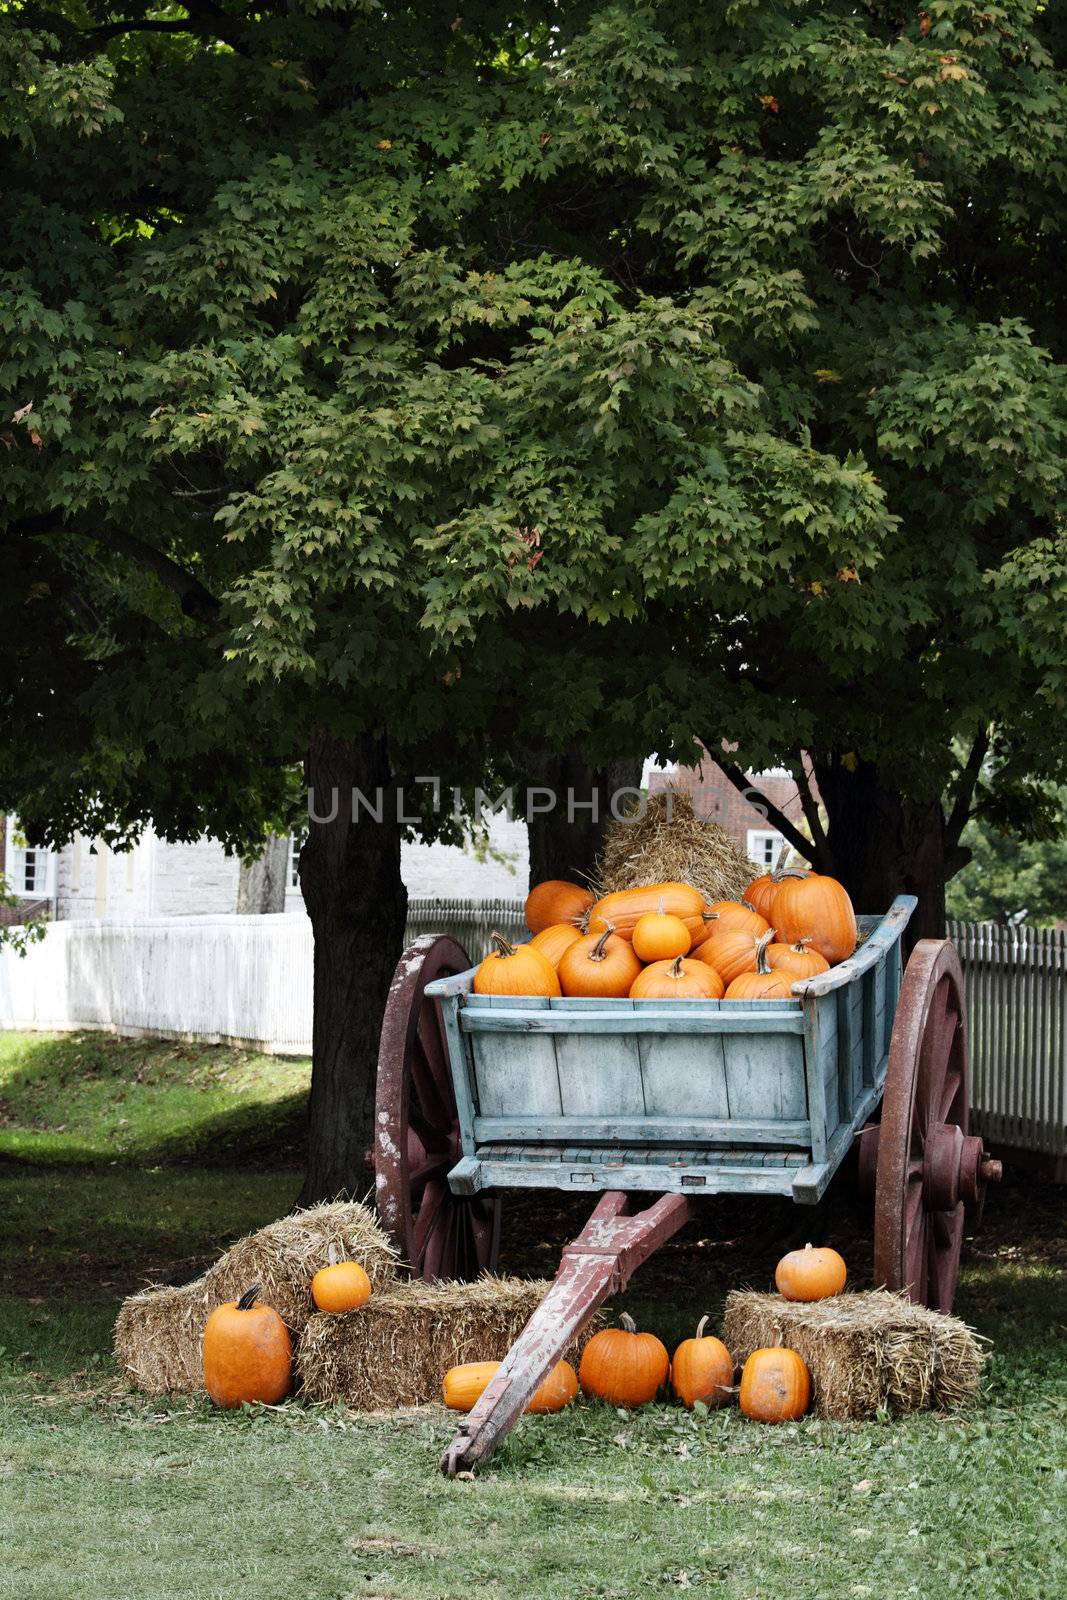 Wagon Full of Pumpkins by StephanieFrey